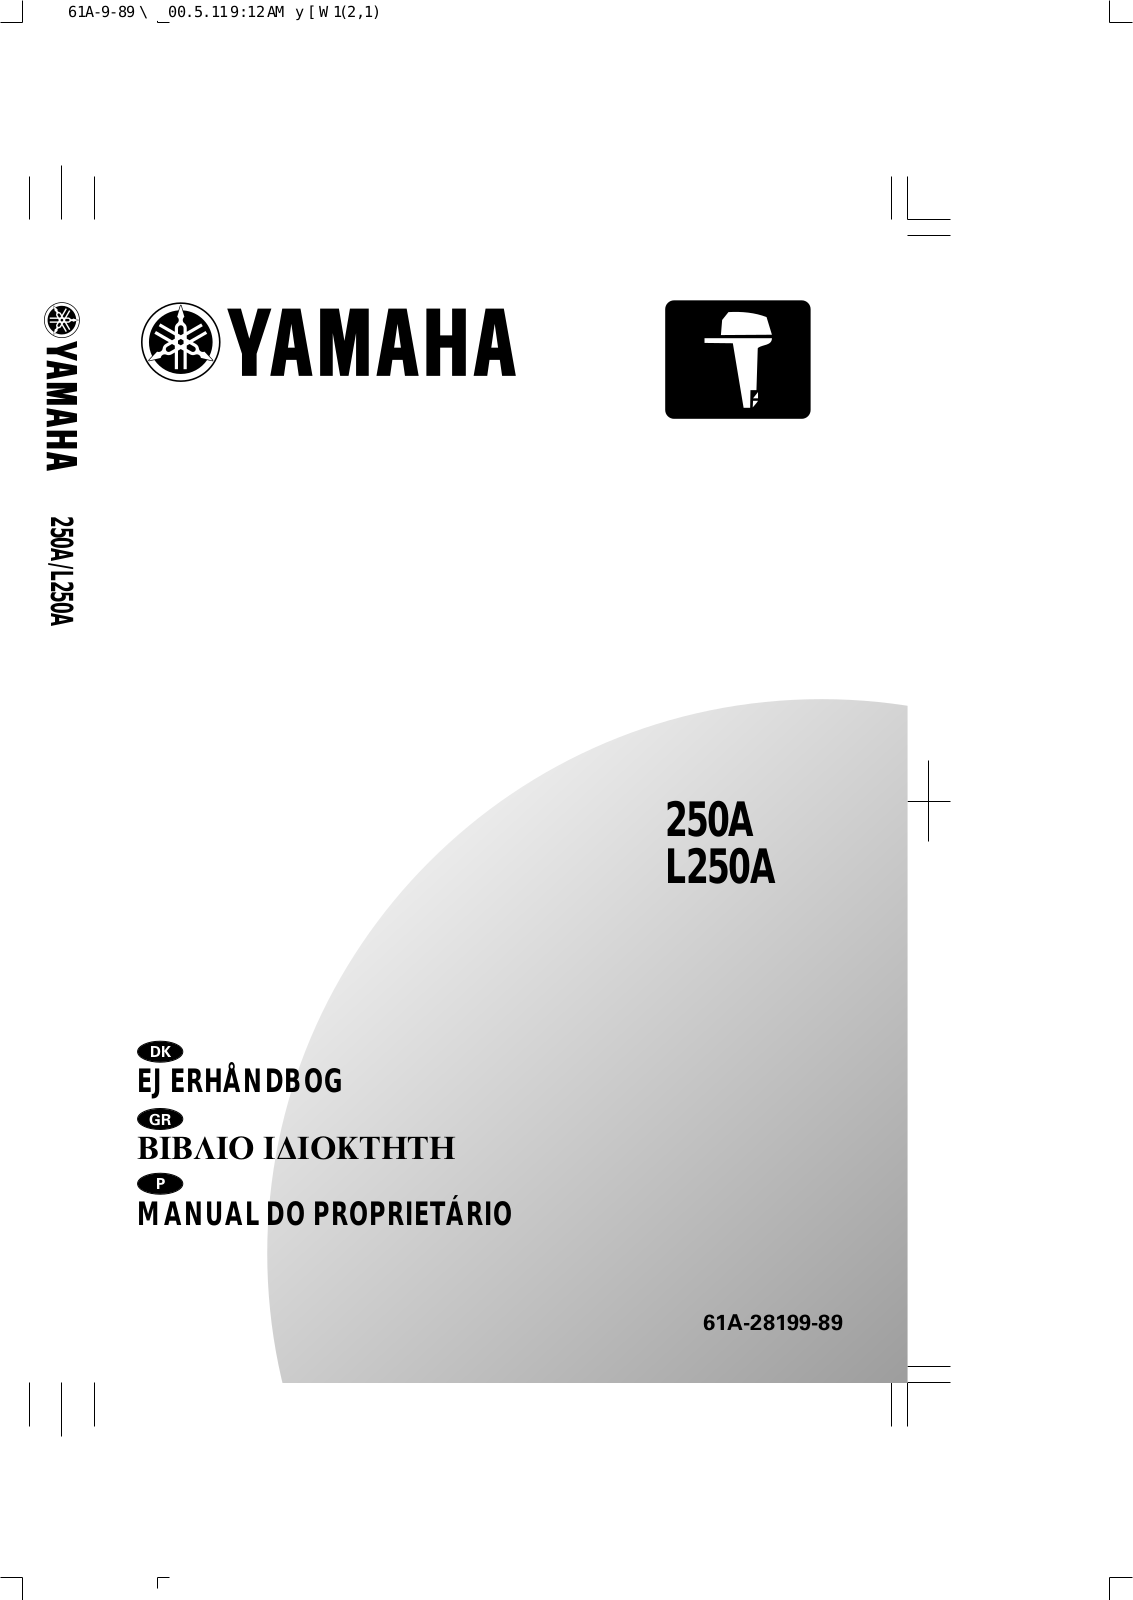 Yamaha 250A, L250A User Manual